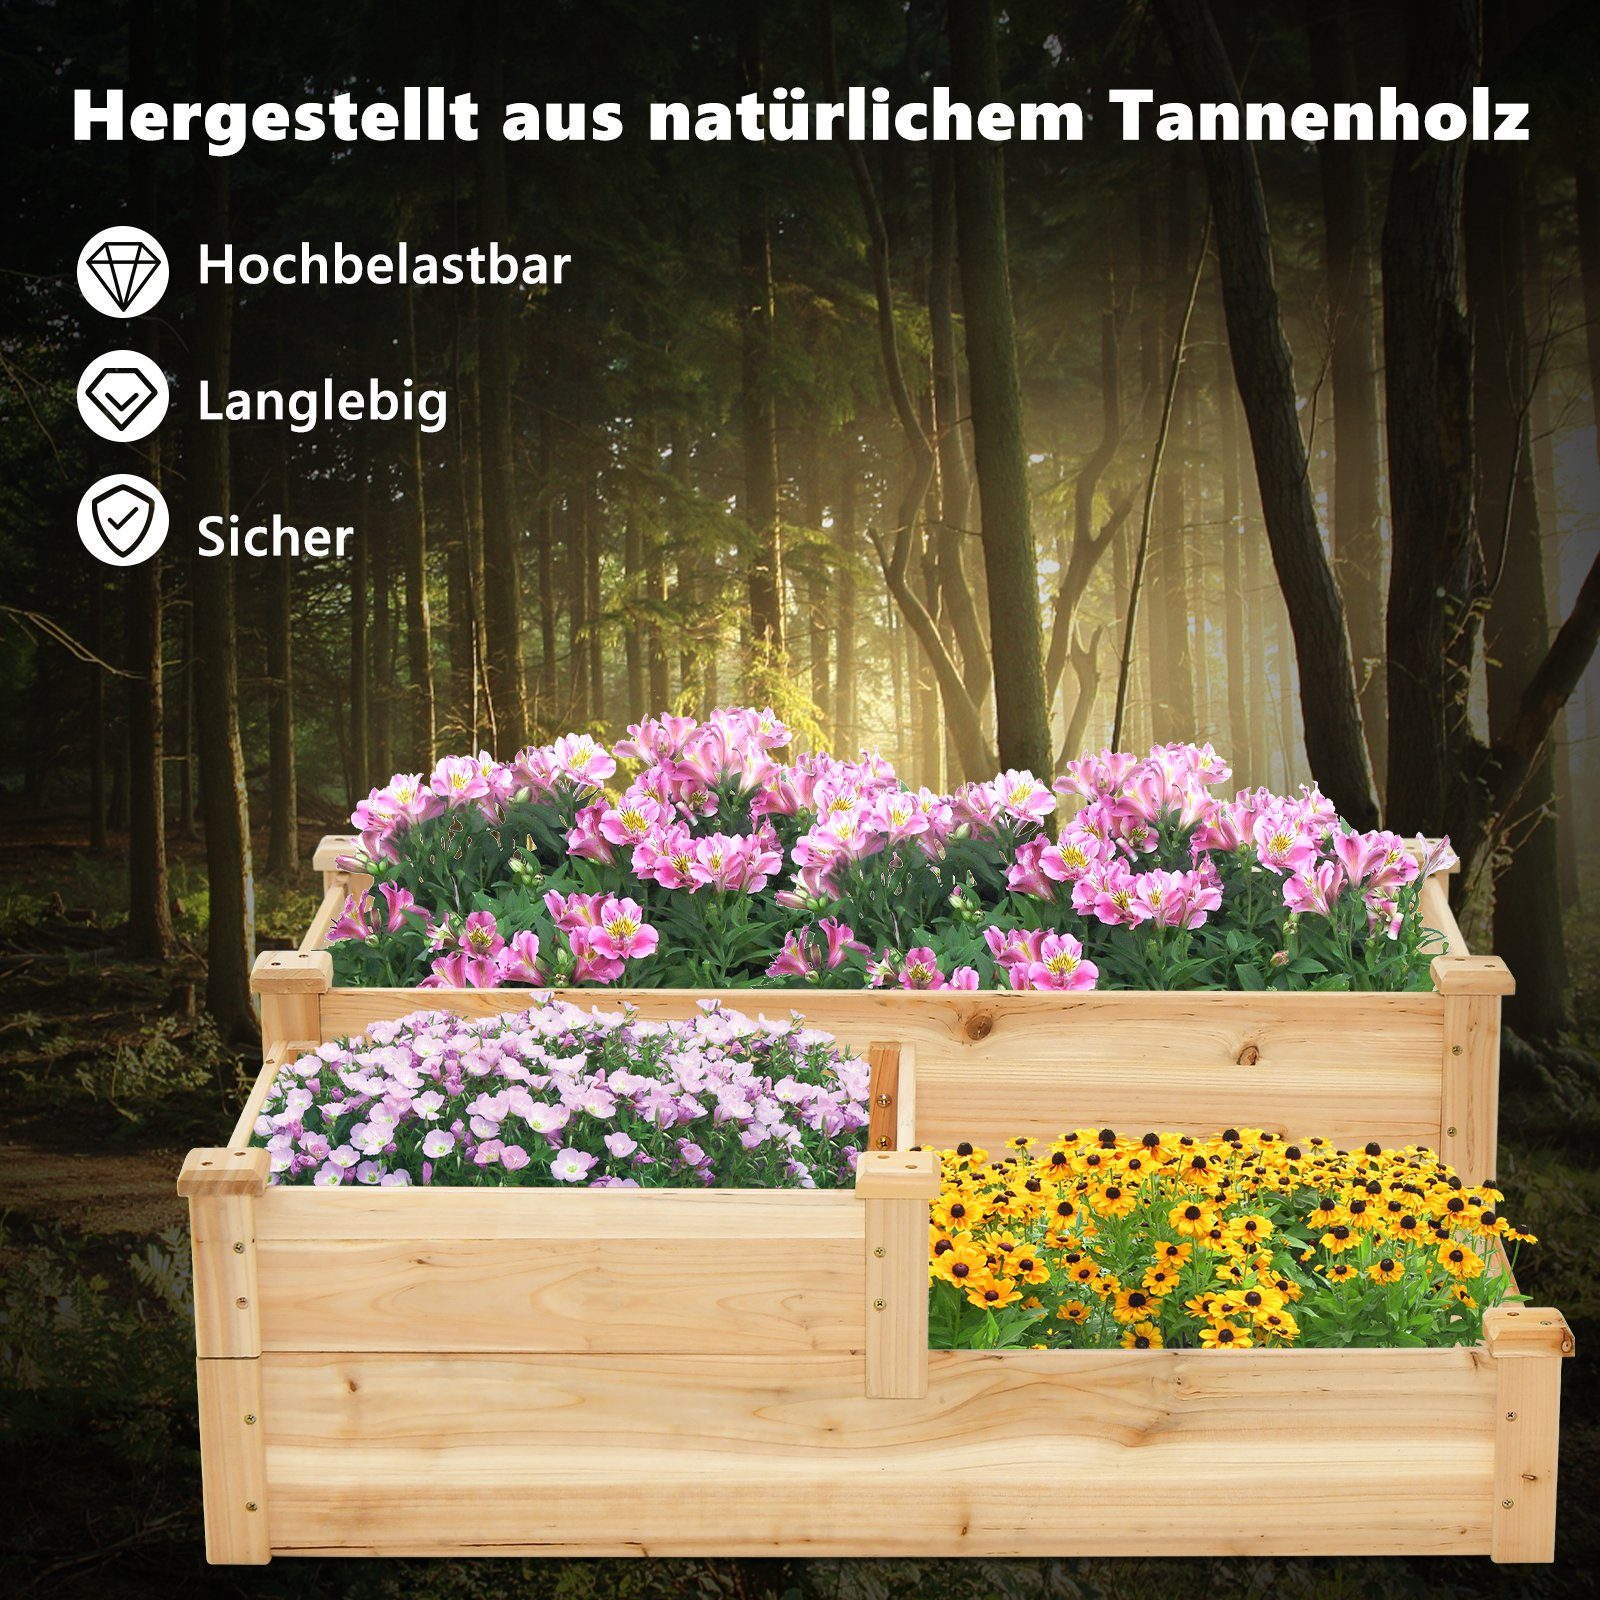 Tannenholz, COSTWAY 107,5x87x37cm mit Boden, offenem 3-stufig, Blumenkasten,